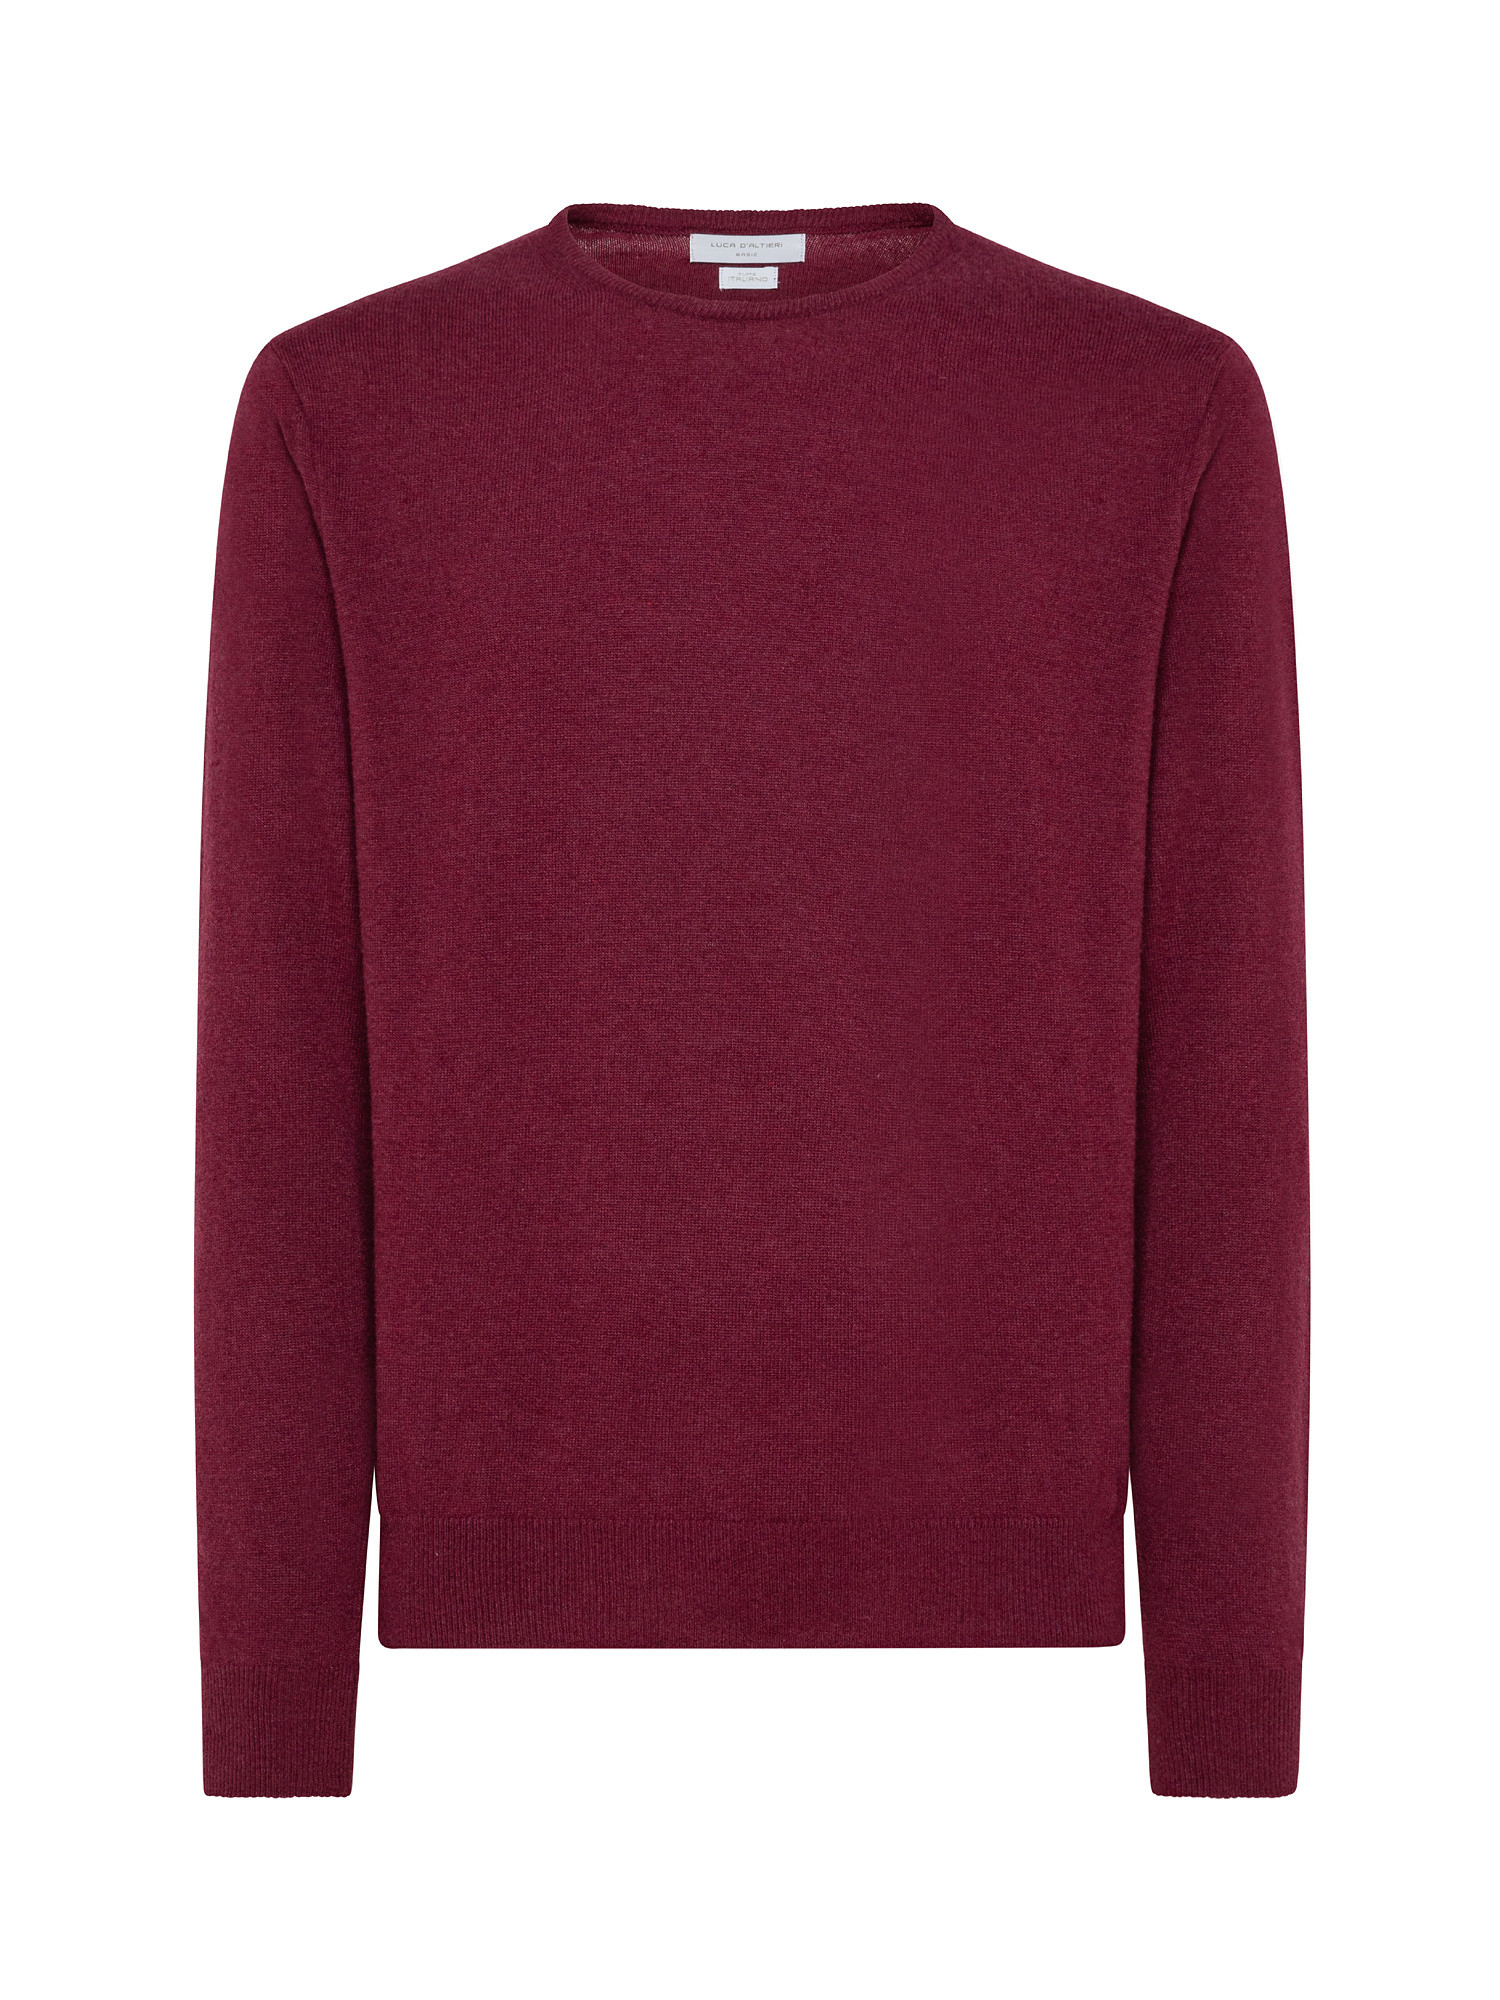 Basic cashmere blend pullover, Red, large image number 0